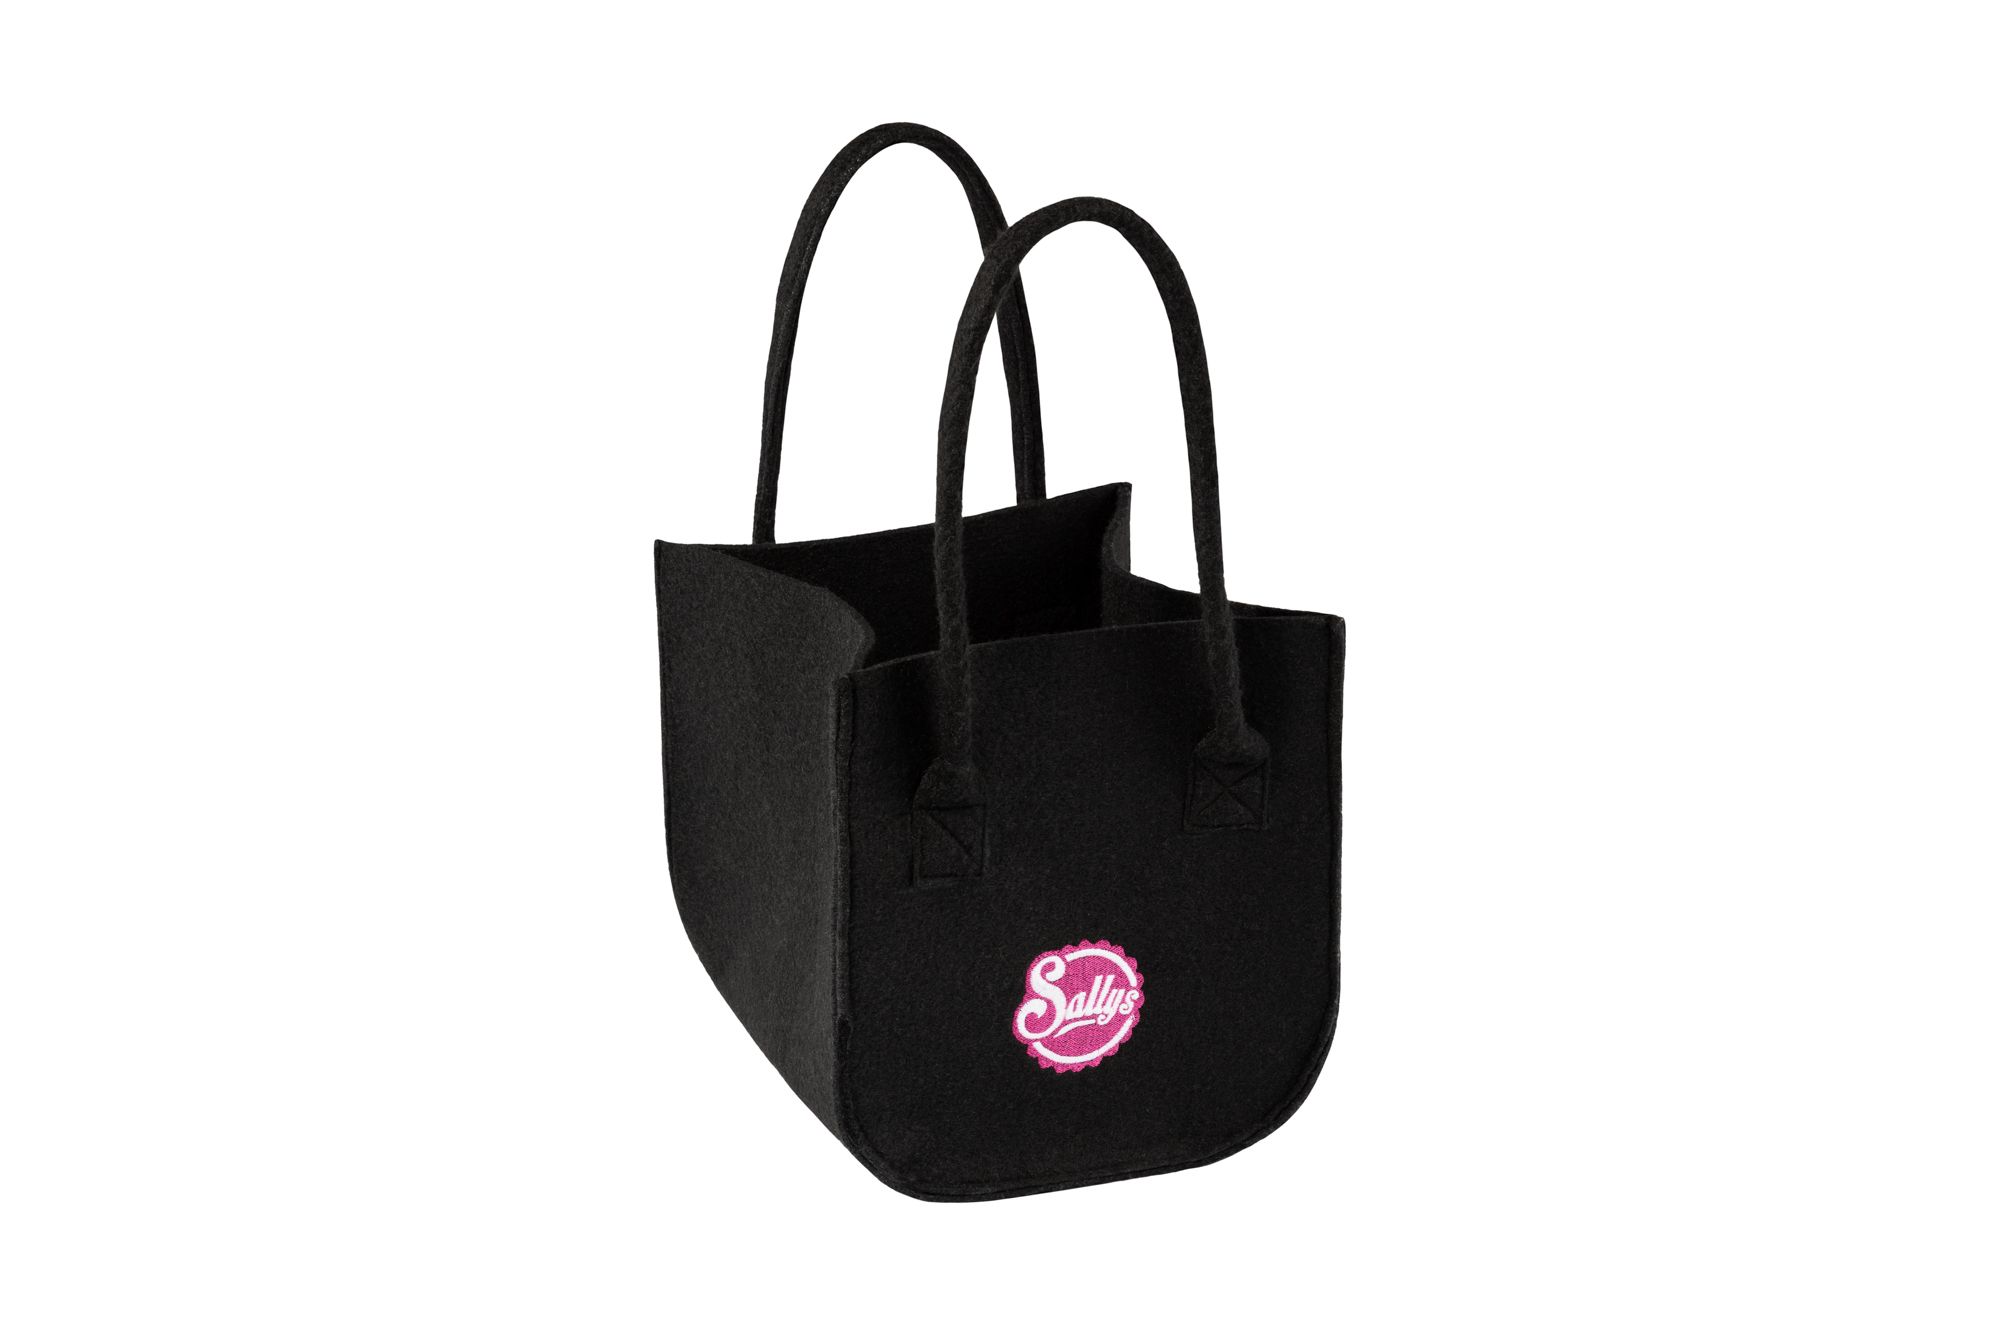 Eine kleine, schwarze Filztasche mit Griffen und Sallys Logo